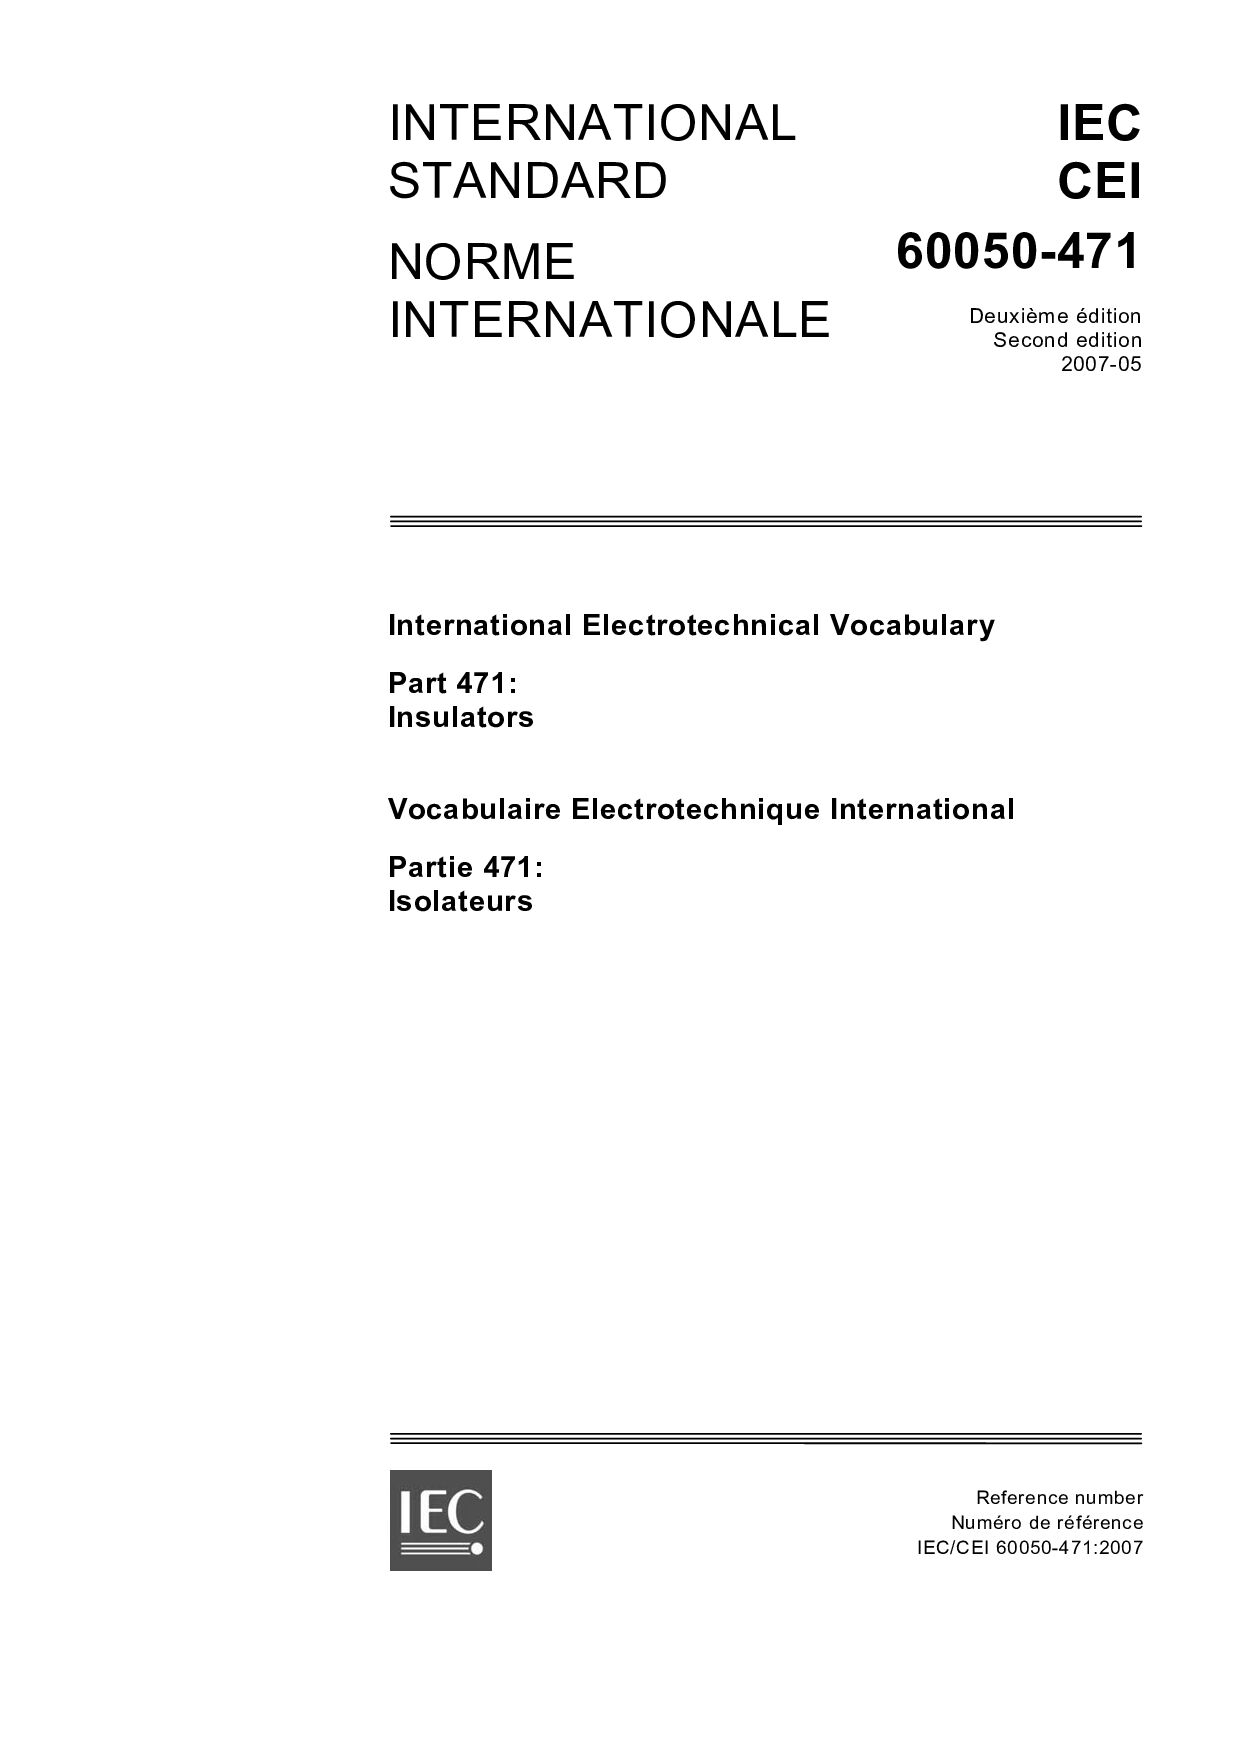 IEC 60050-471-2007